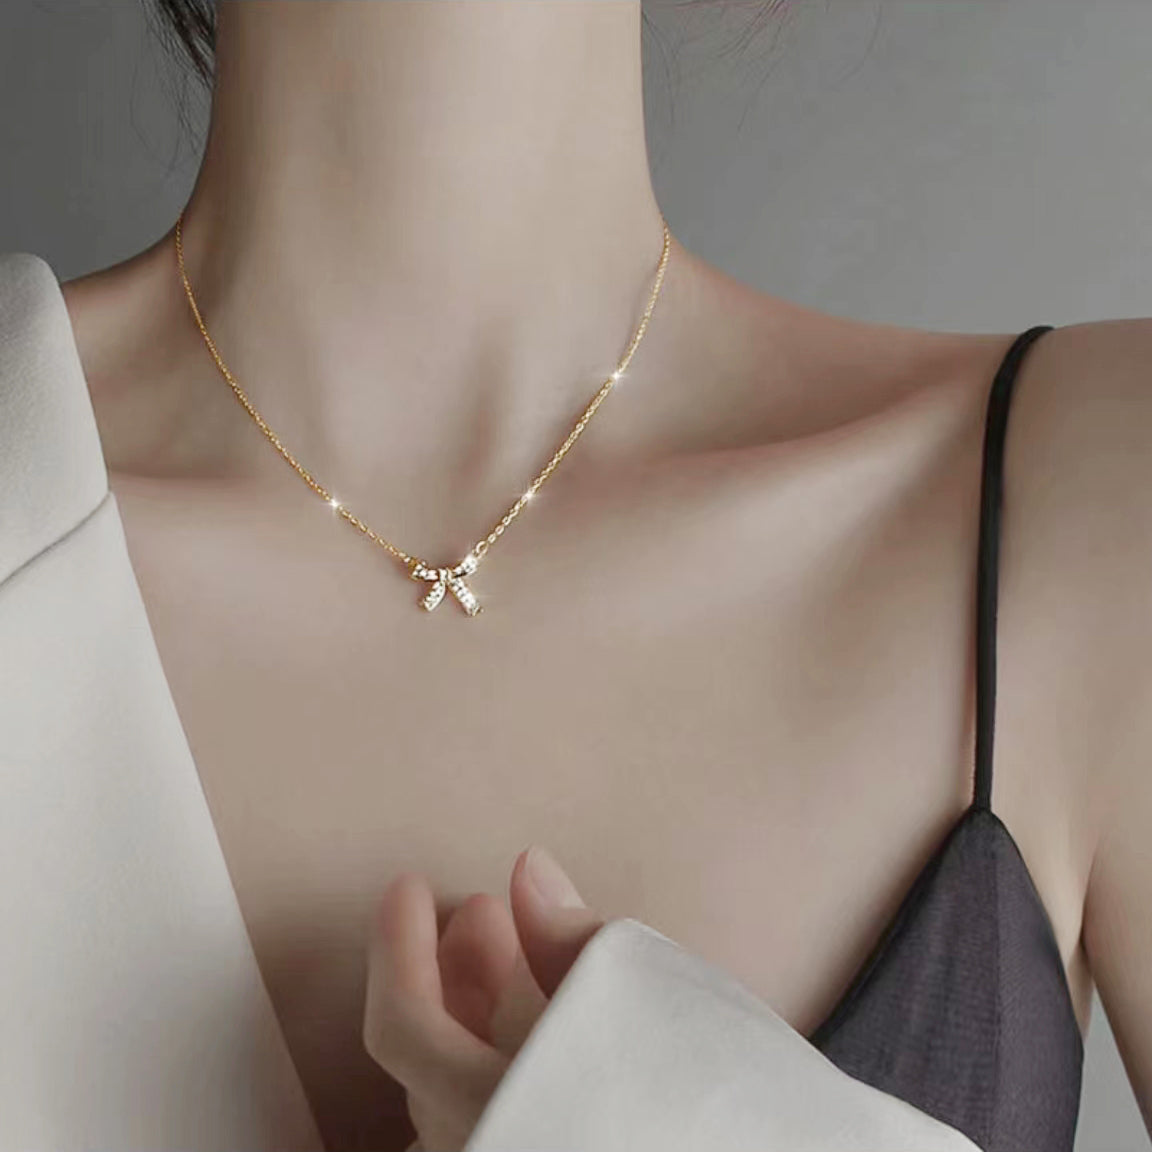 Stylish Gold Bow Necklace